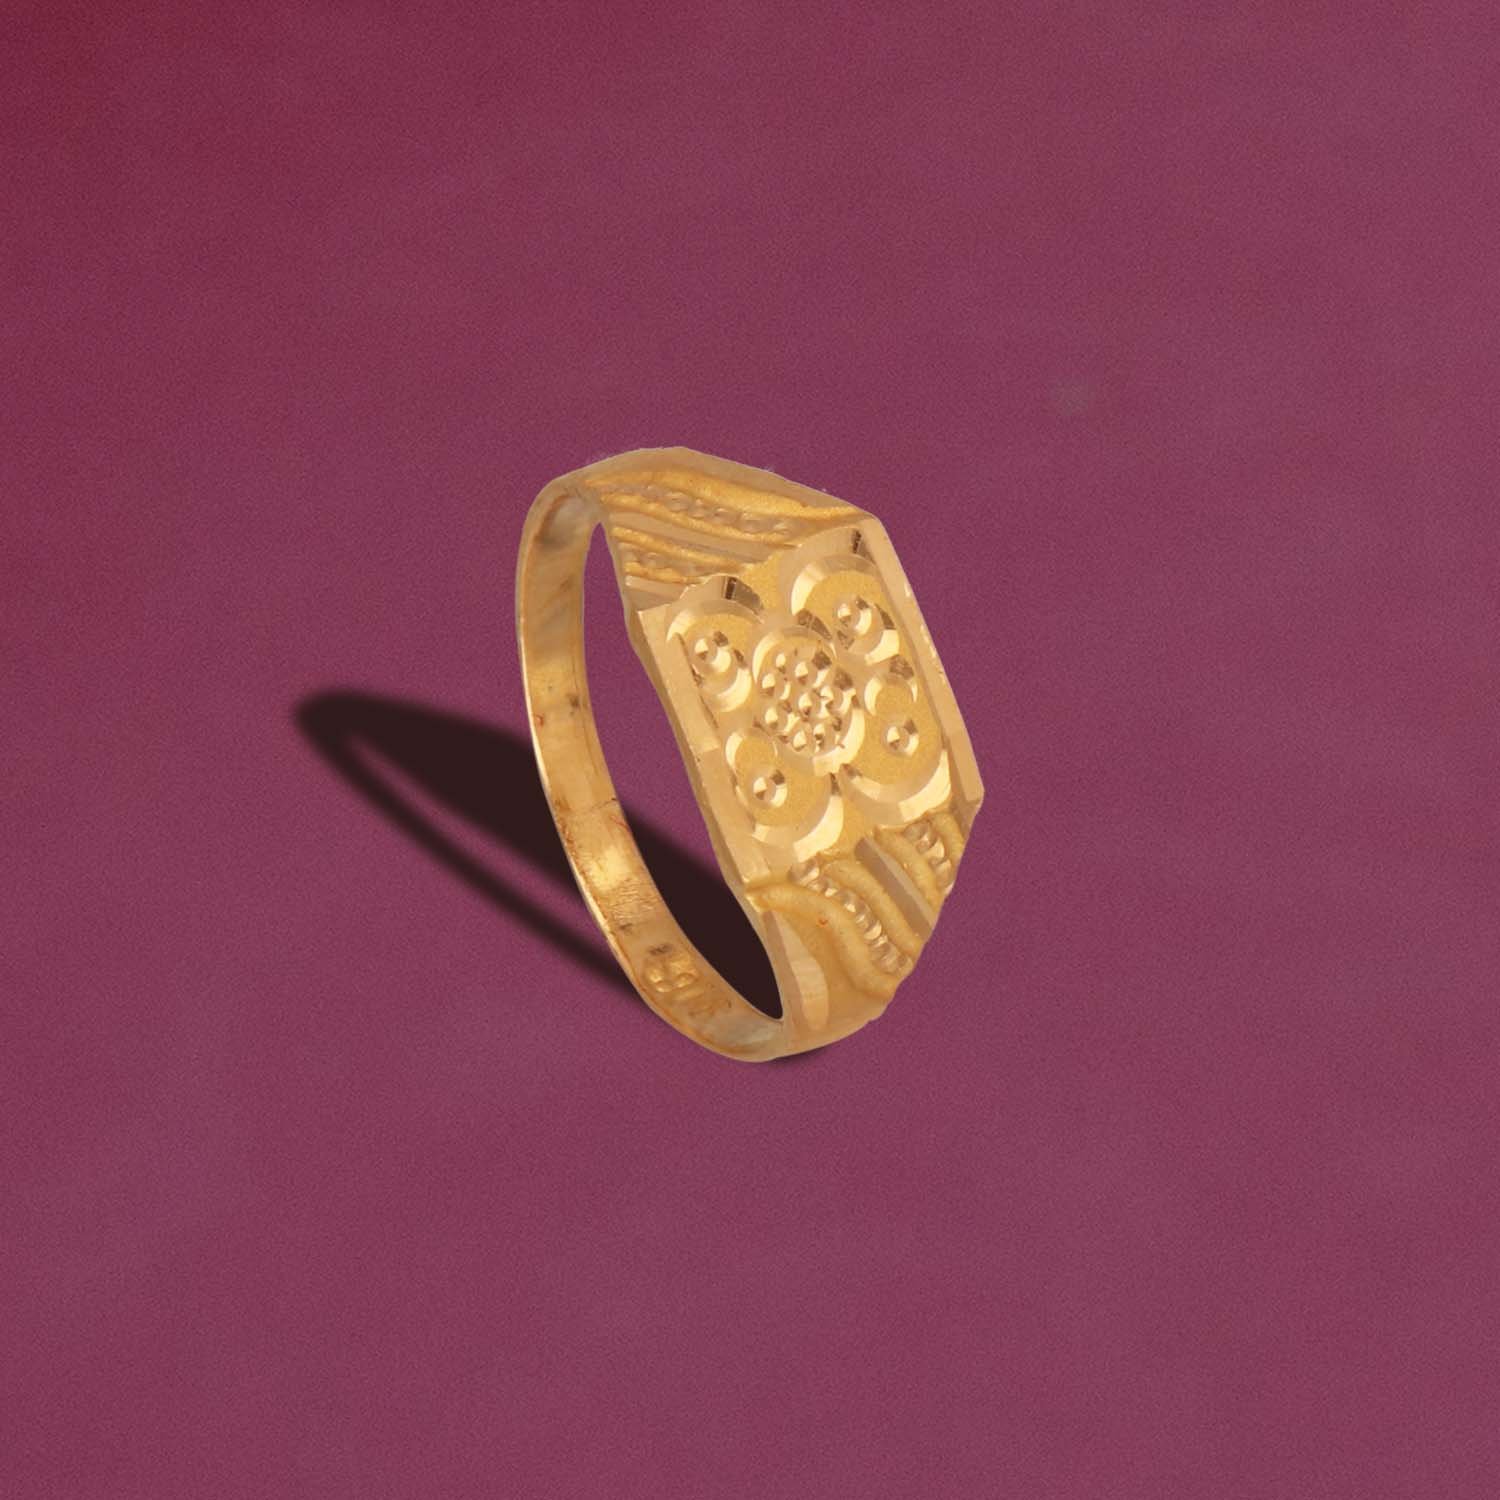 KE 1Gm Gold plated kaju Buy 2 finger ring free For Girls, Women & Men